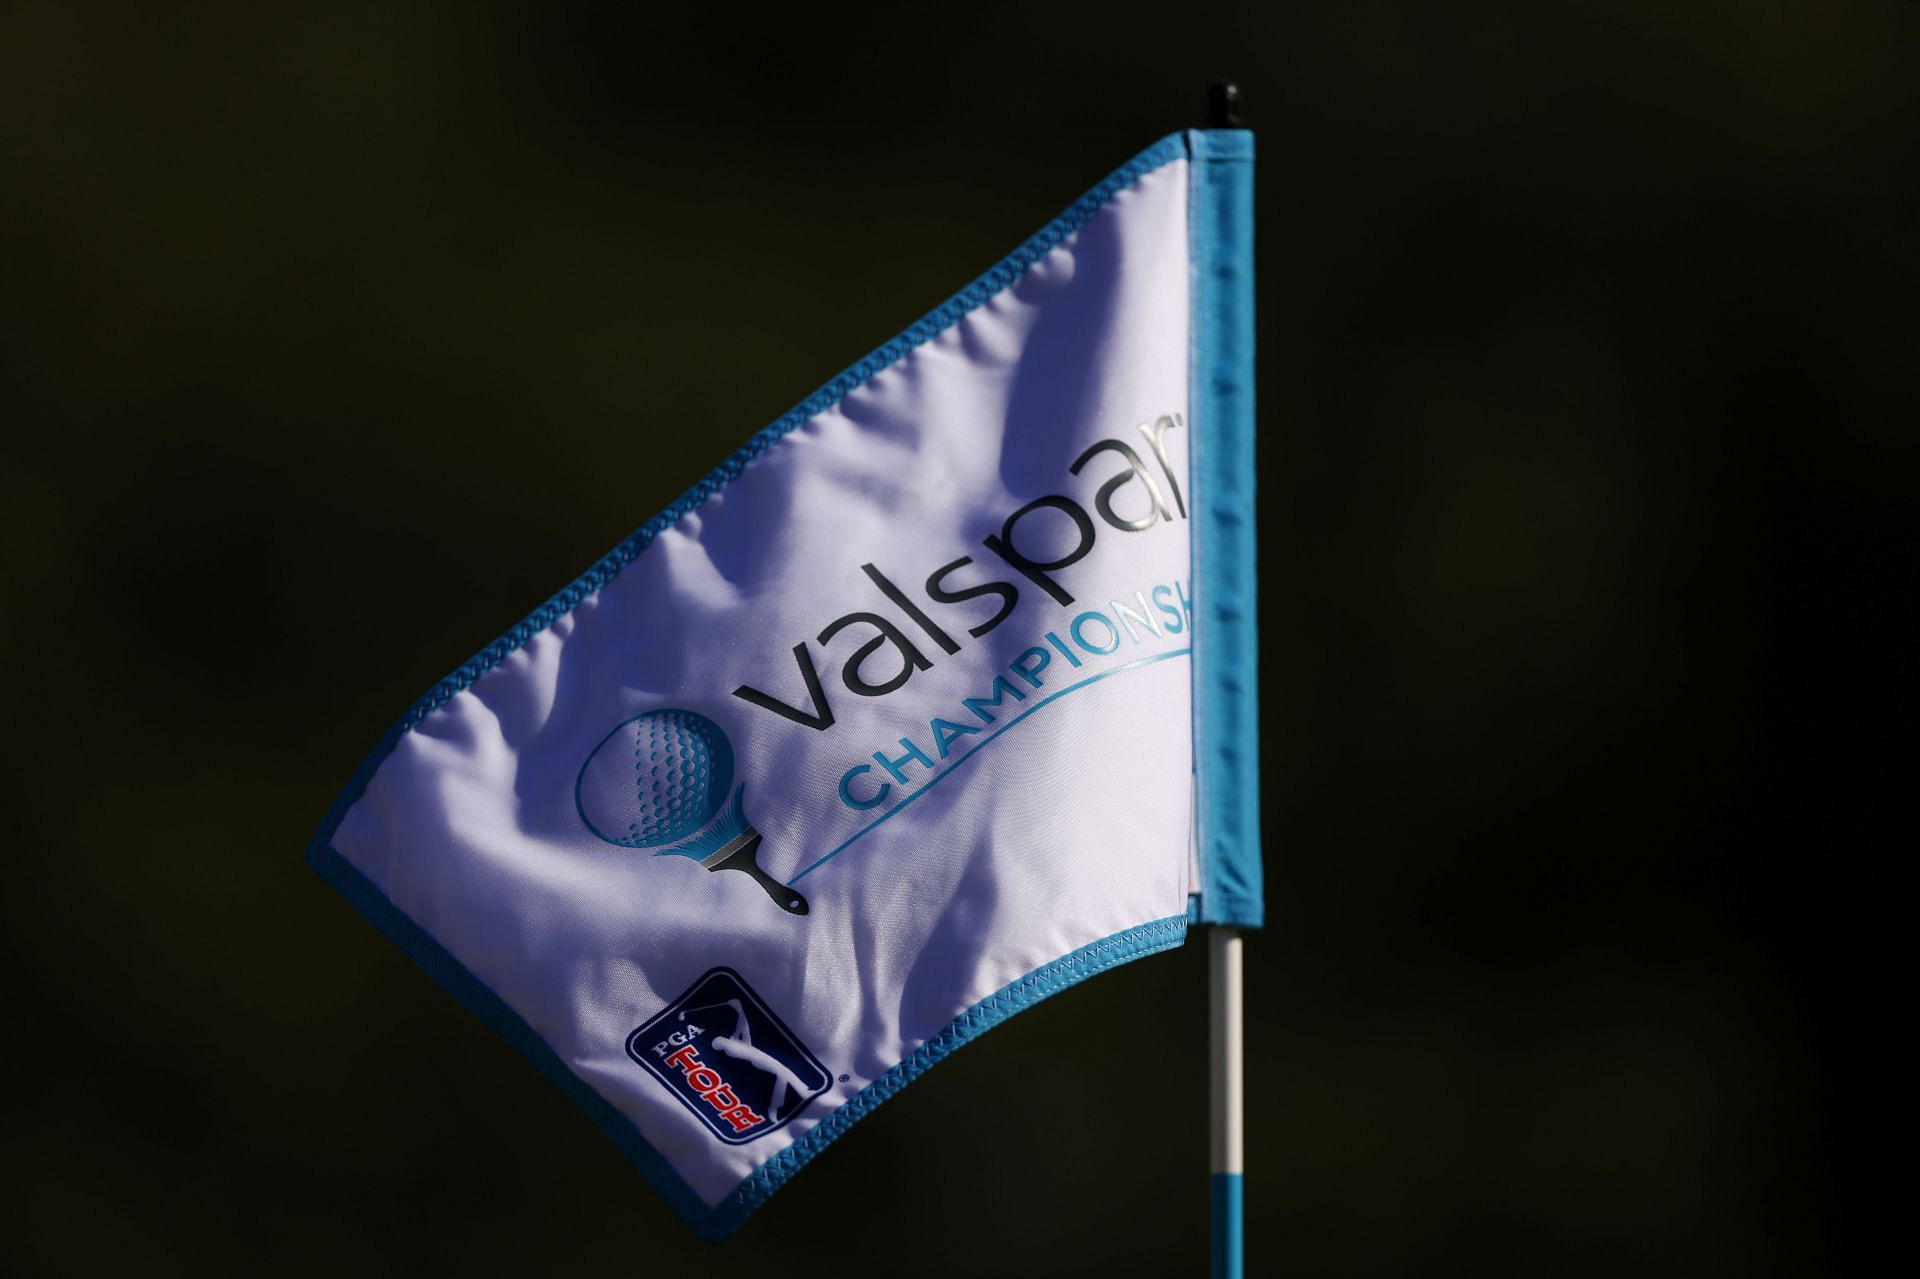 Valspar Championship - Round One